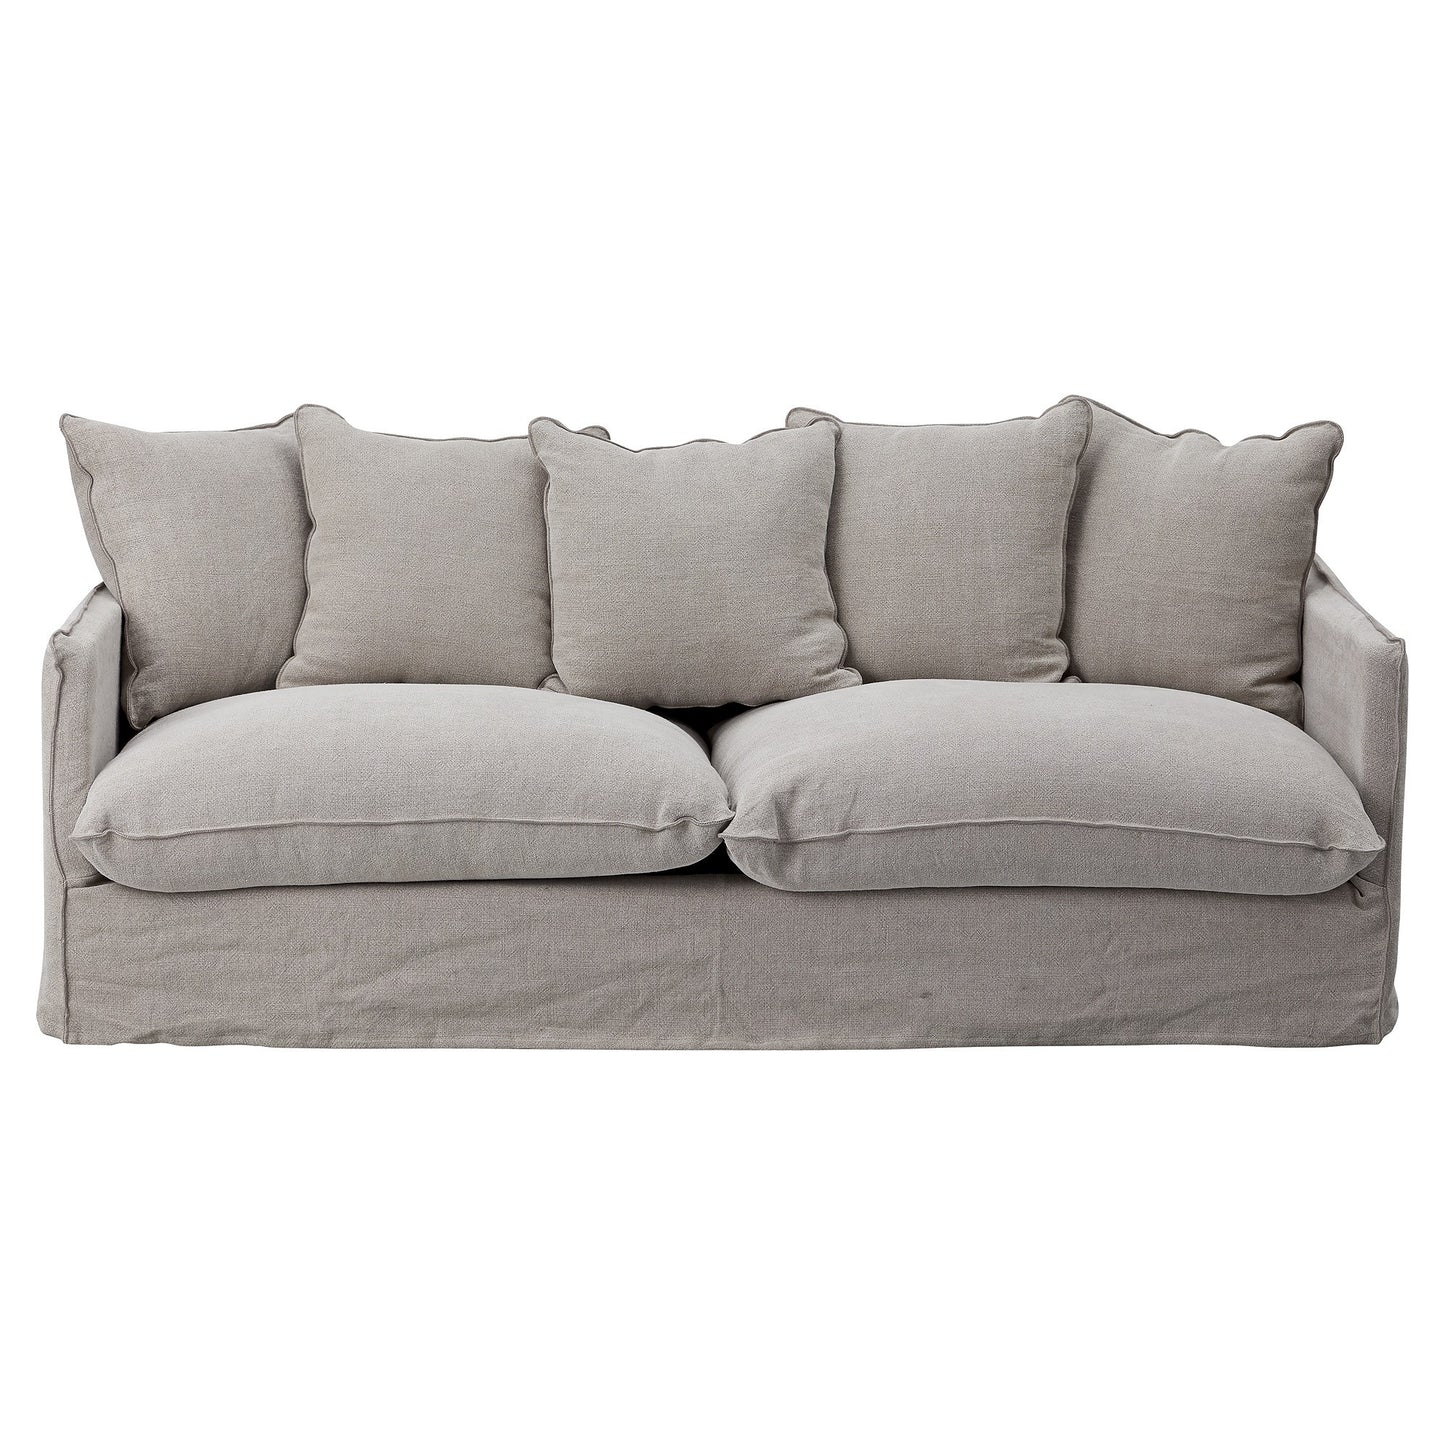 Couch Dara dunkles leinen 210cm